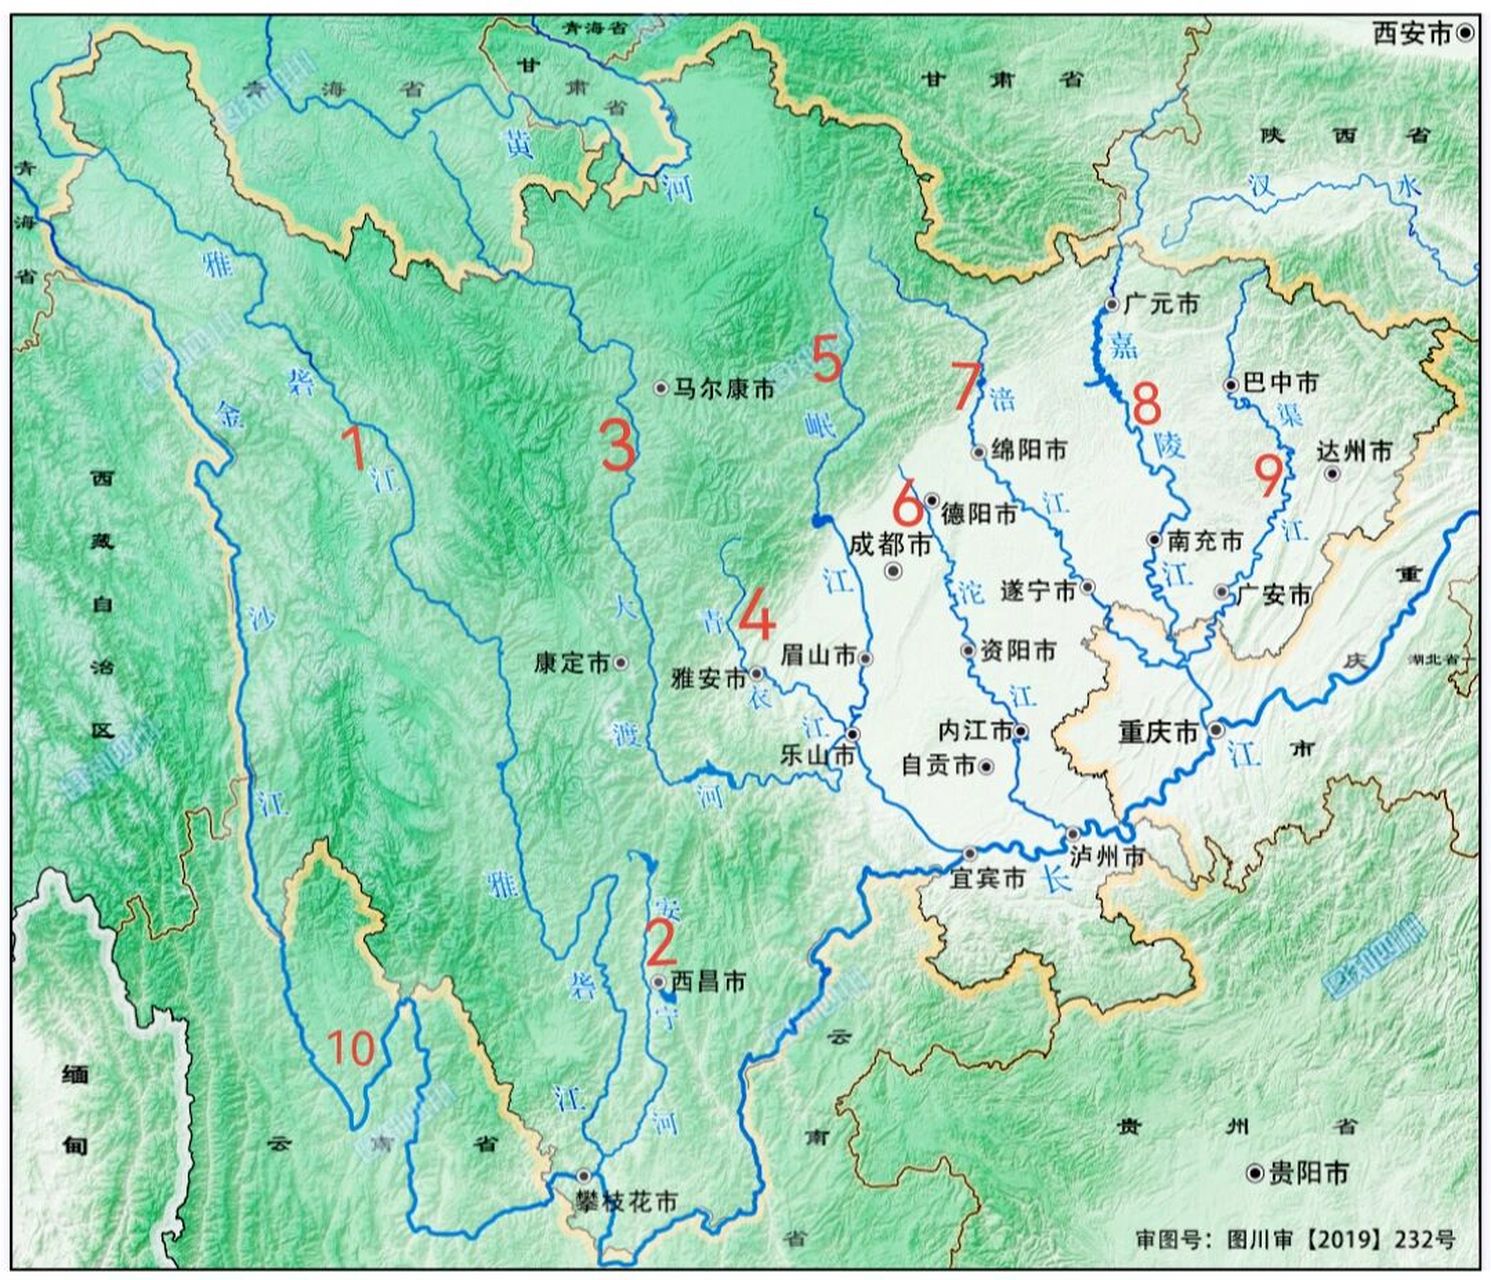 四川,其实是十川 四川十条大河地图:1,雅砻江2,安宁河3,大渡河4